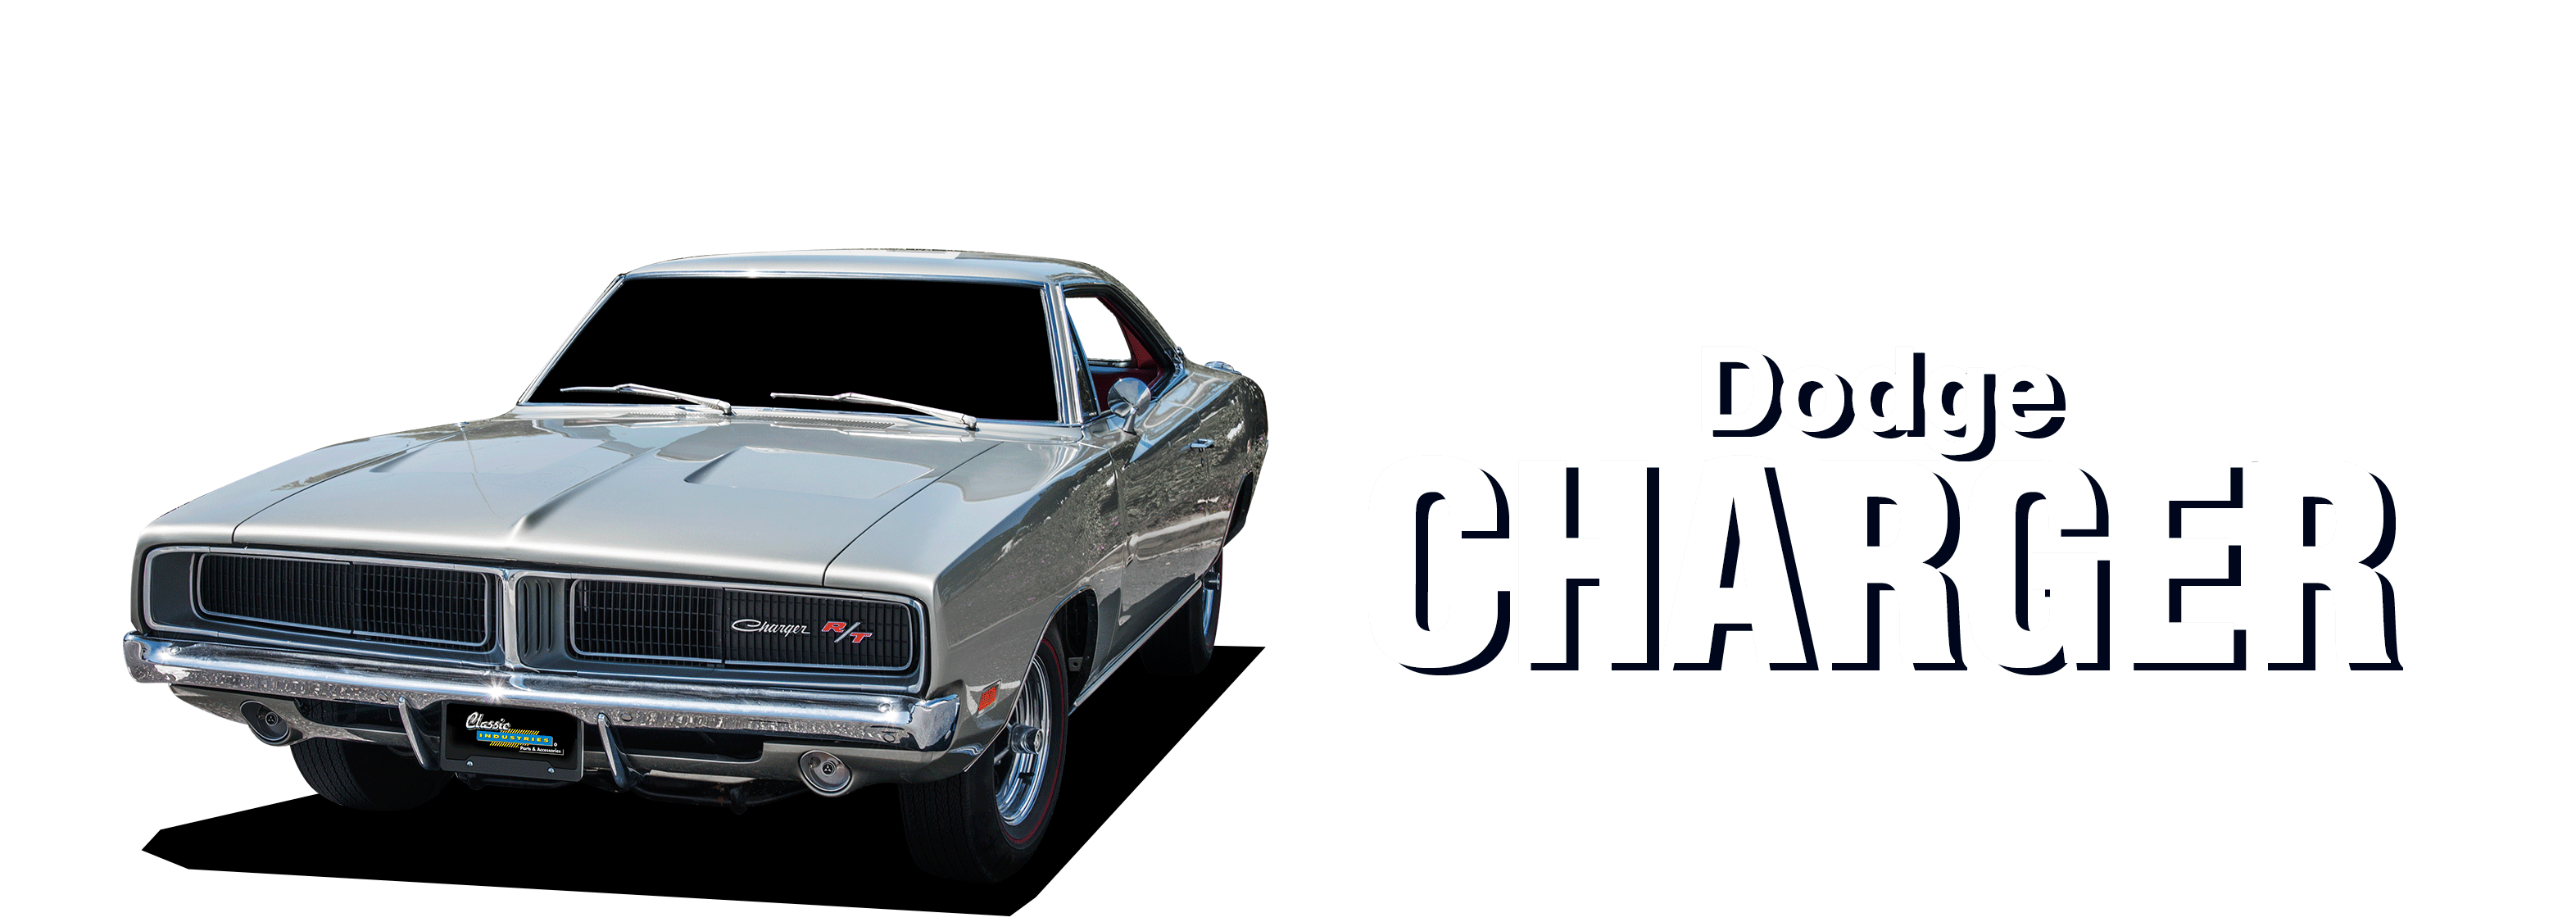 Dodge-Charger-vehicle-desktop-2023